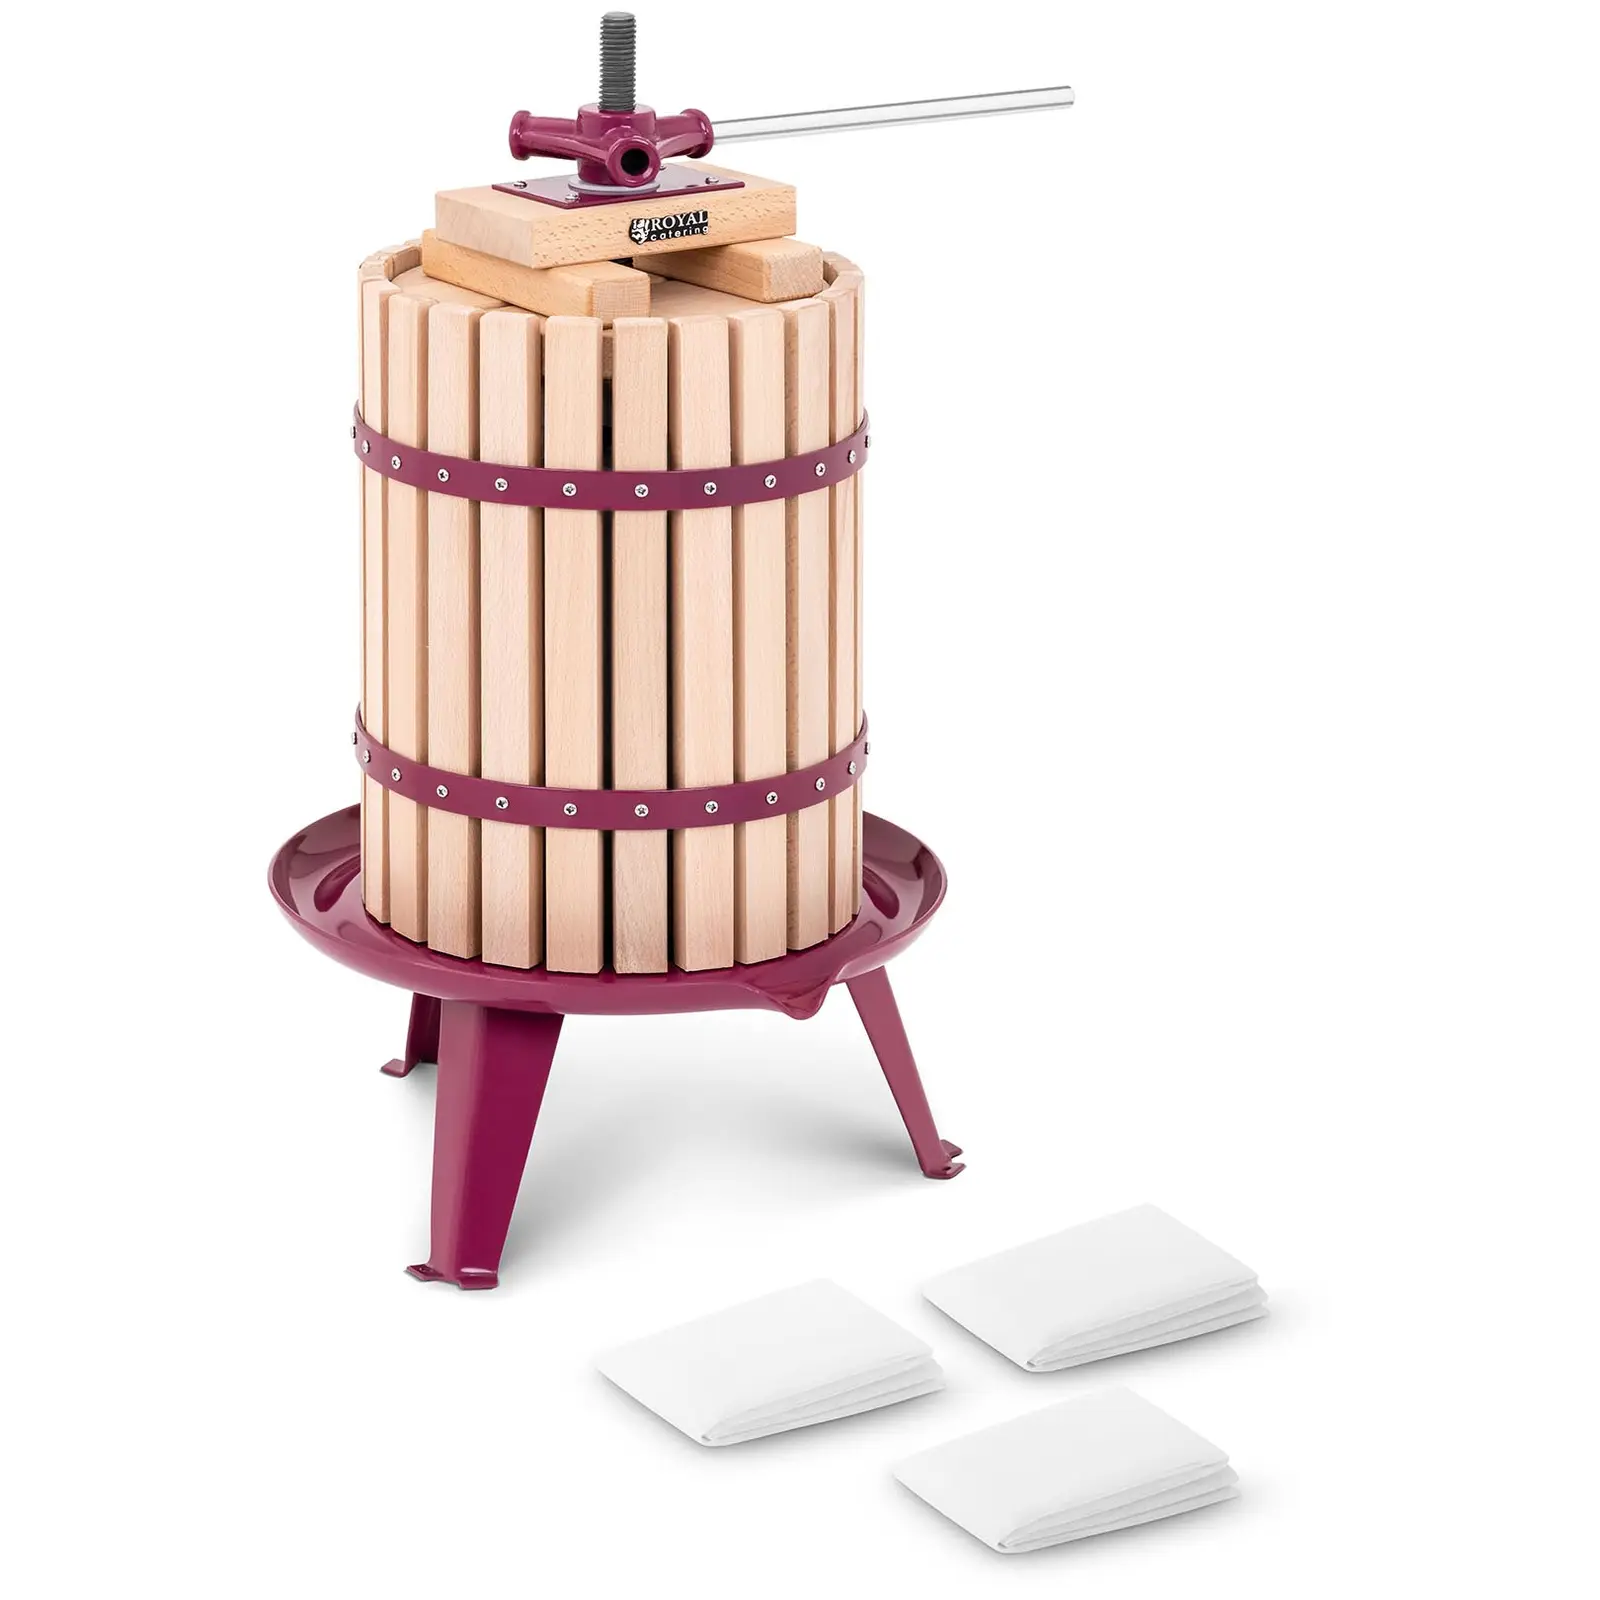 Prensa para fruta - manual - madera - 18 L - incluye bloque de madera, placa de presión y 3 paños de prensado